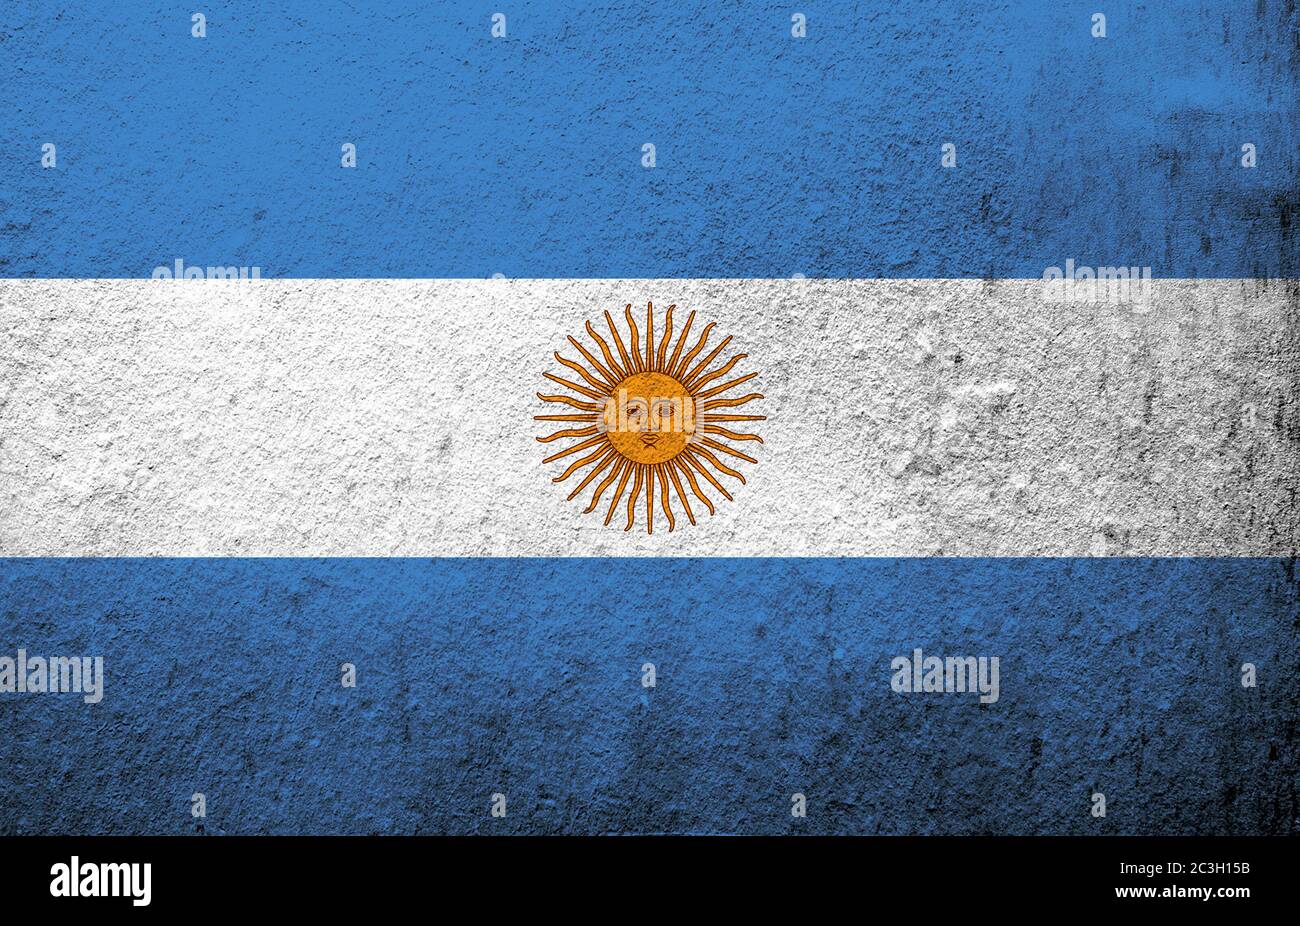 Drapeau national de l'Argentine (République Argentine). Fond Grunge Banque D'Images